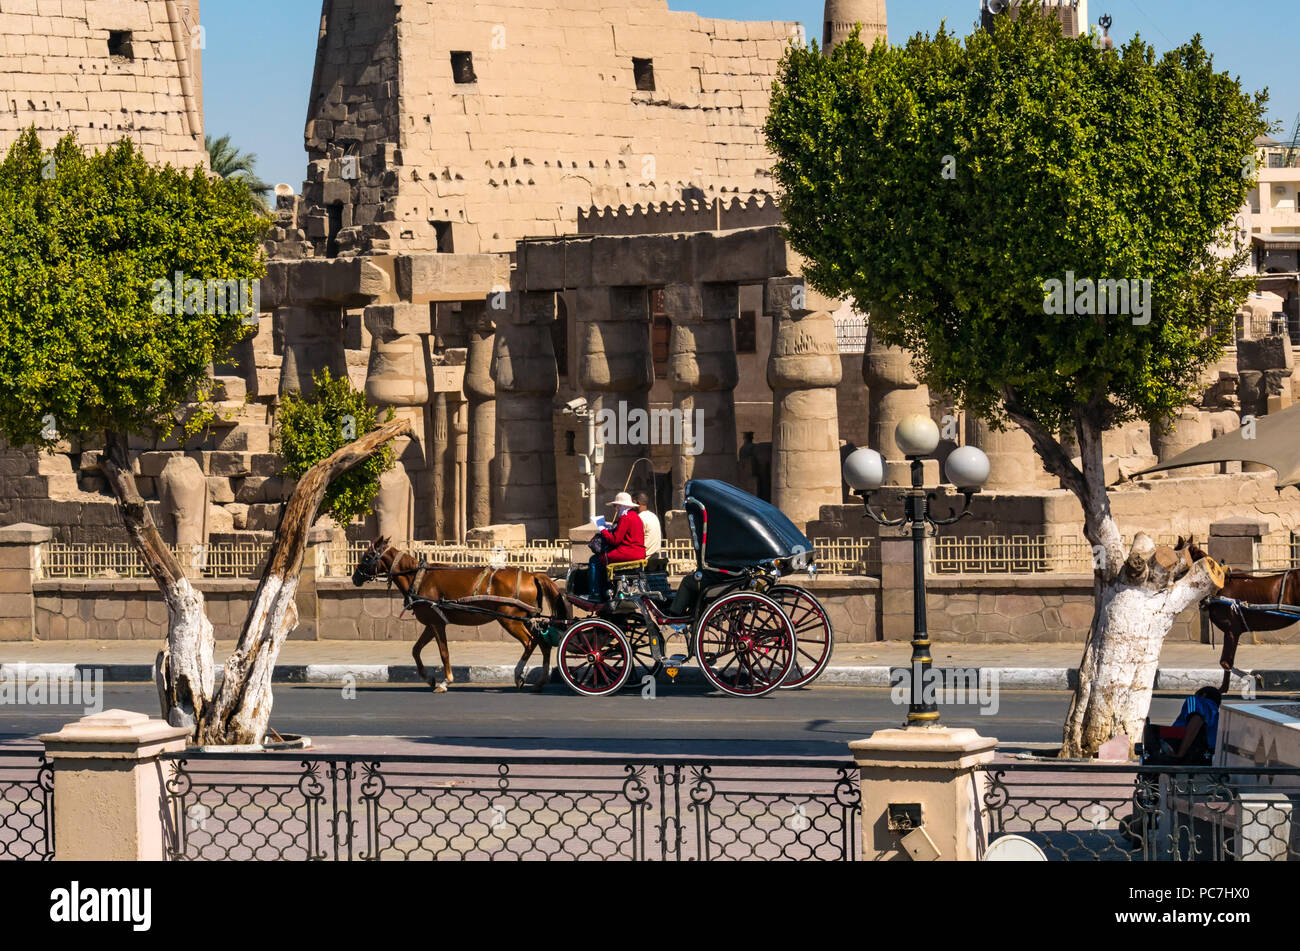 Pferdekutsche Tourist Transport vorbei vor der Tempel von Luxor, Luxor, Ägypten, Afrika Stockfoto